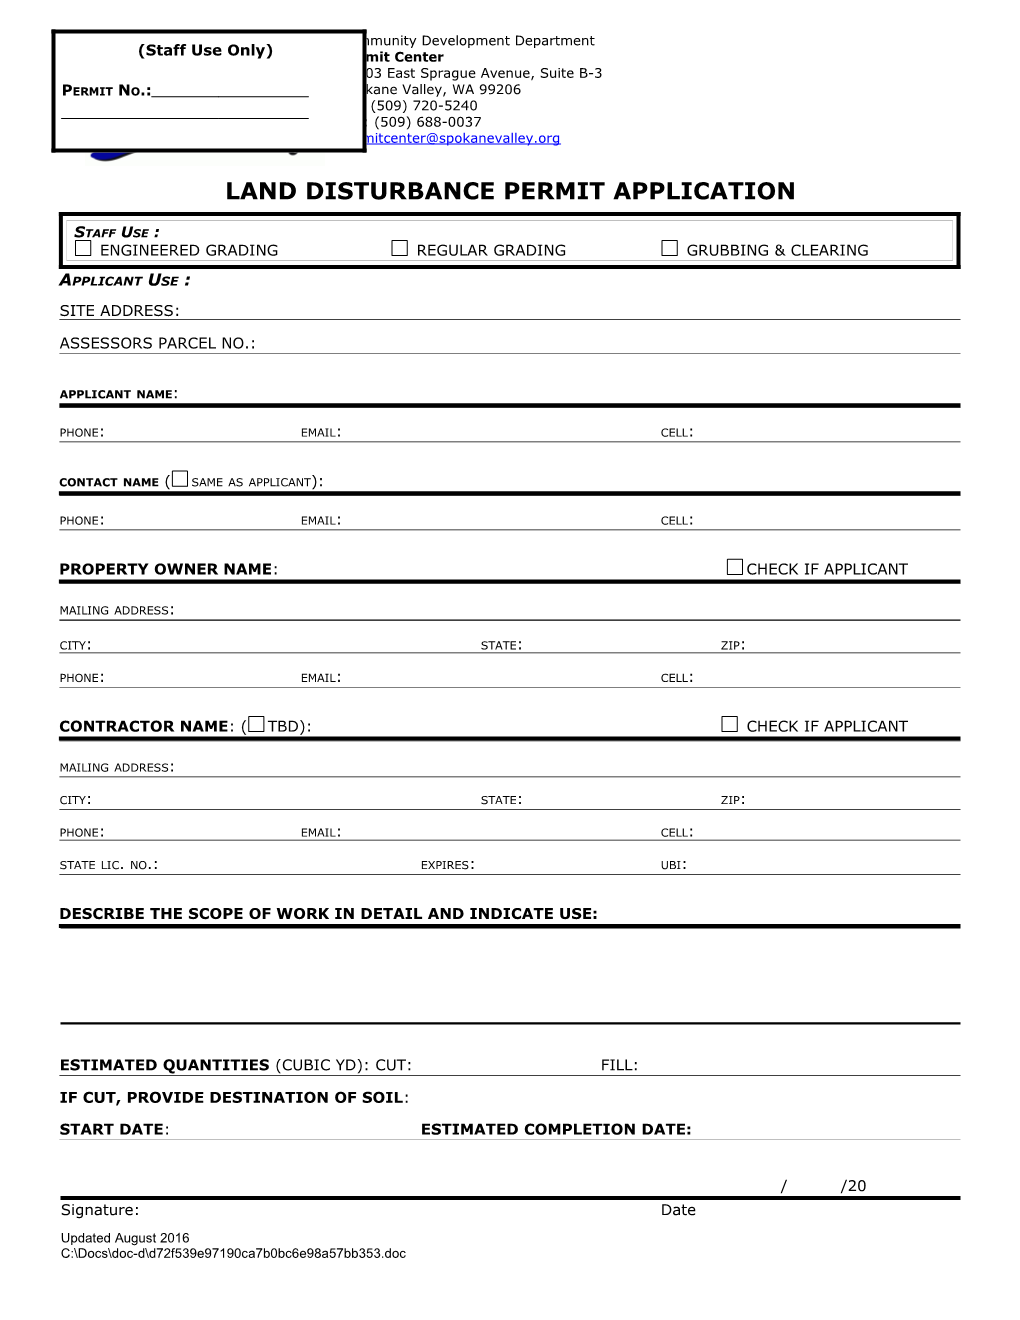 Land Disturbance(Ld) Permit Checklist